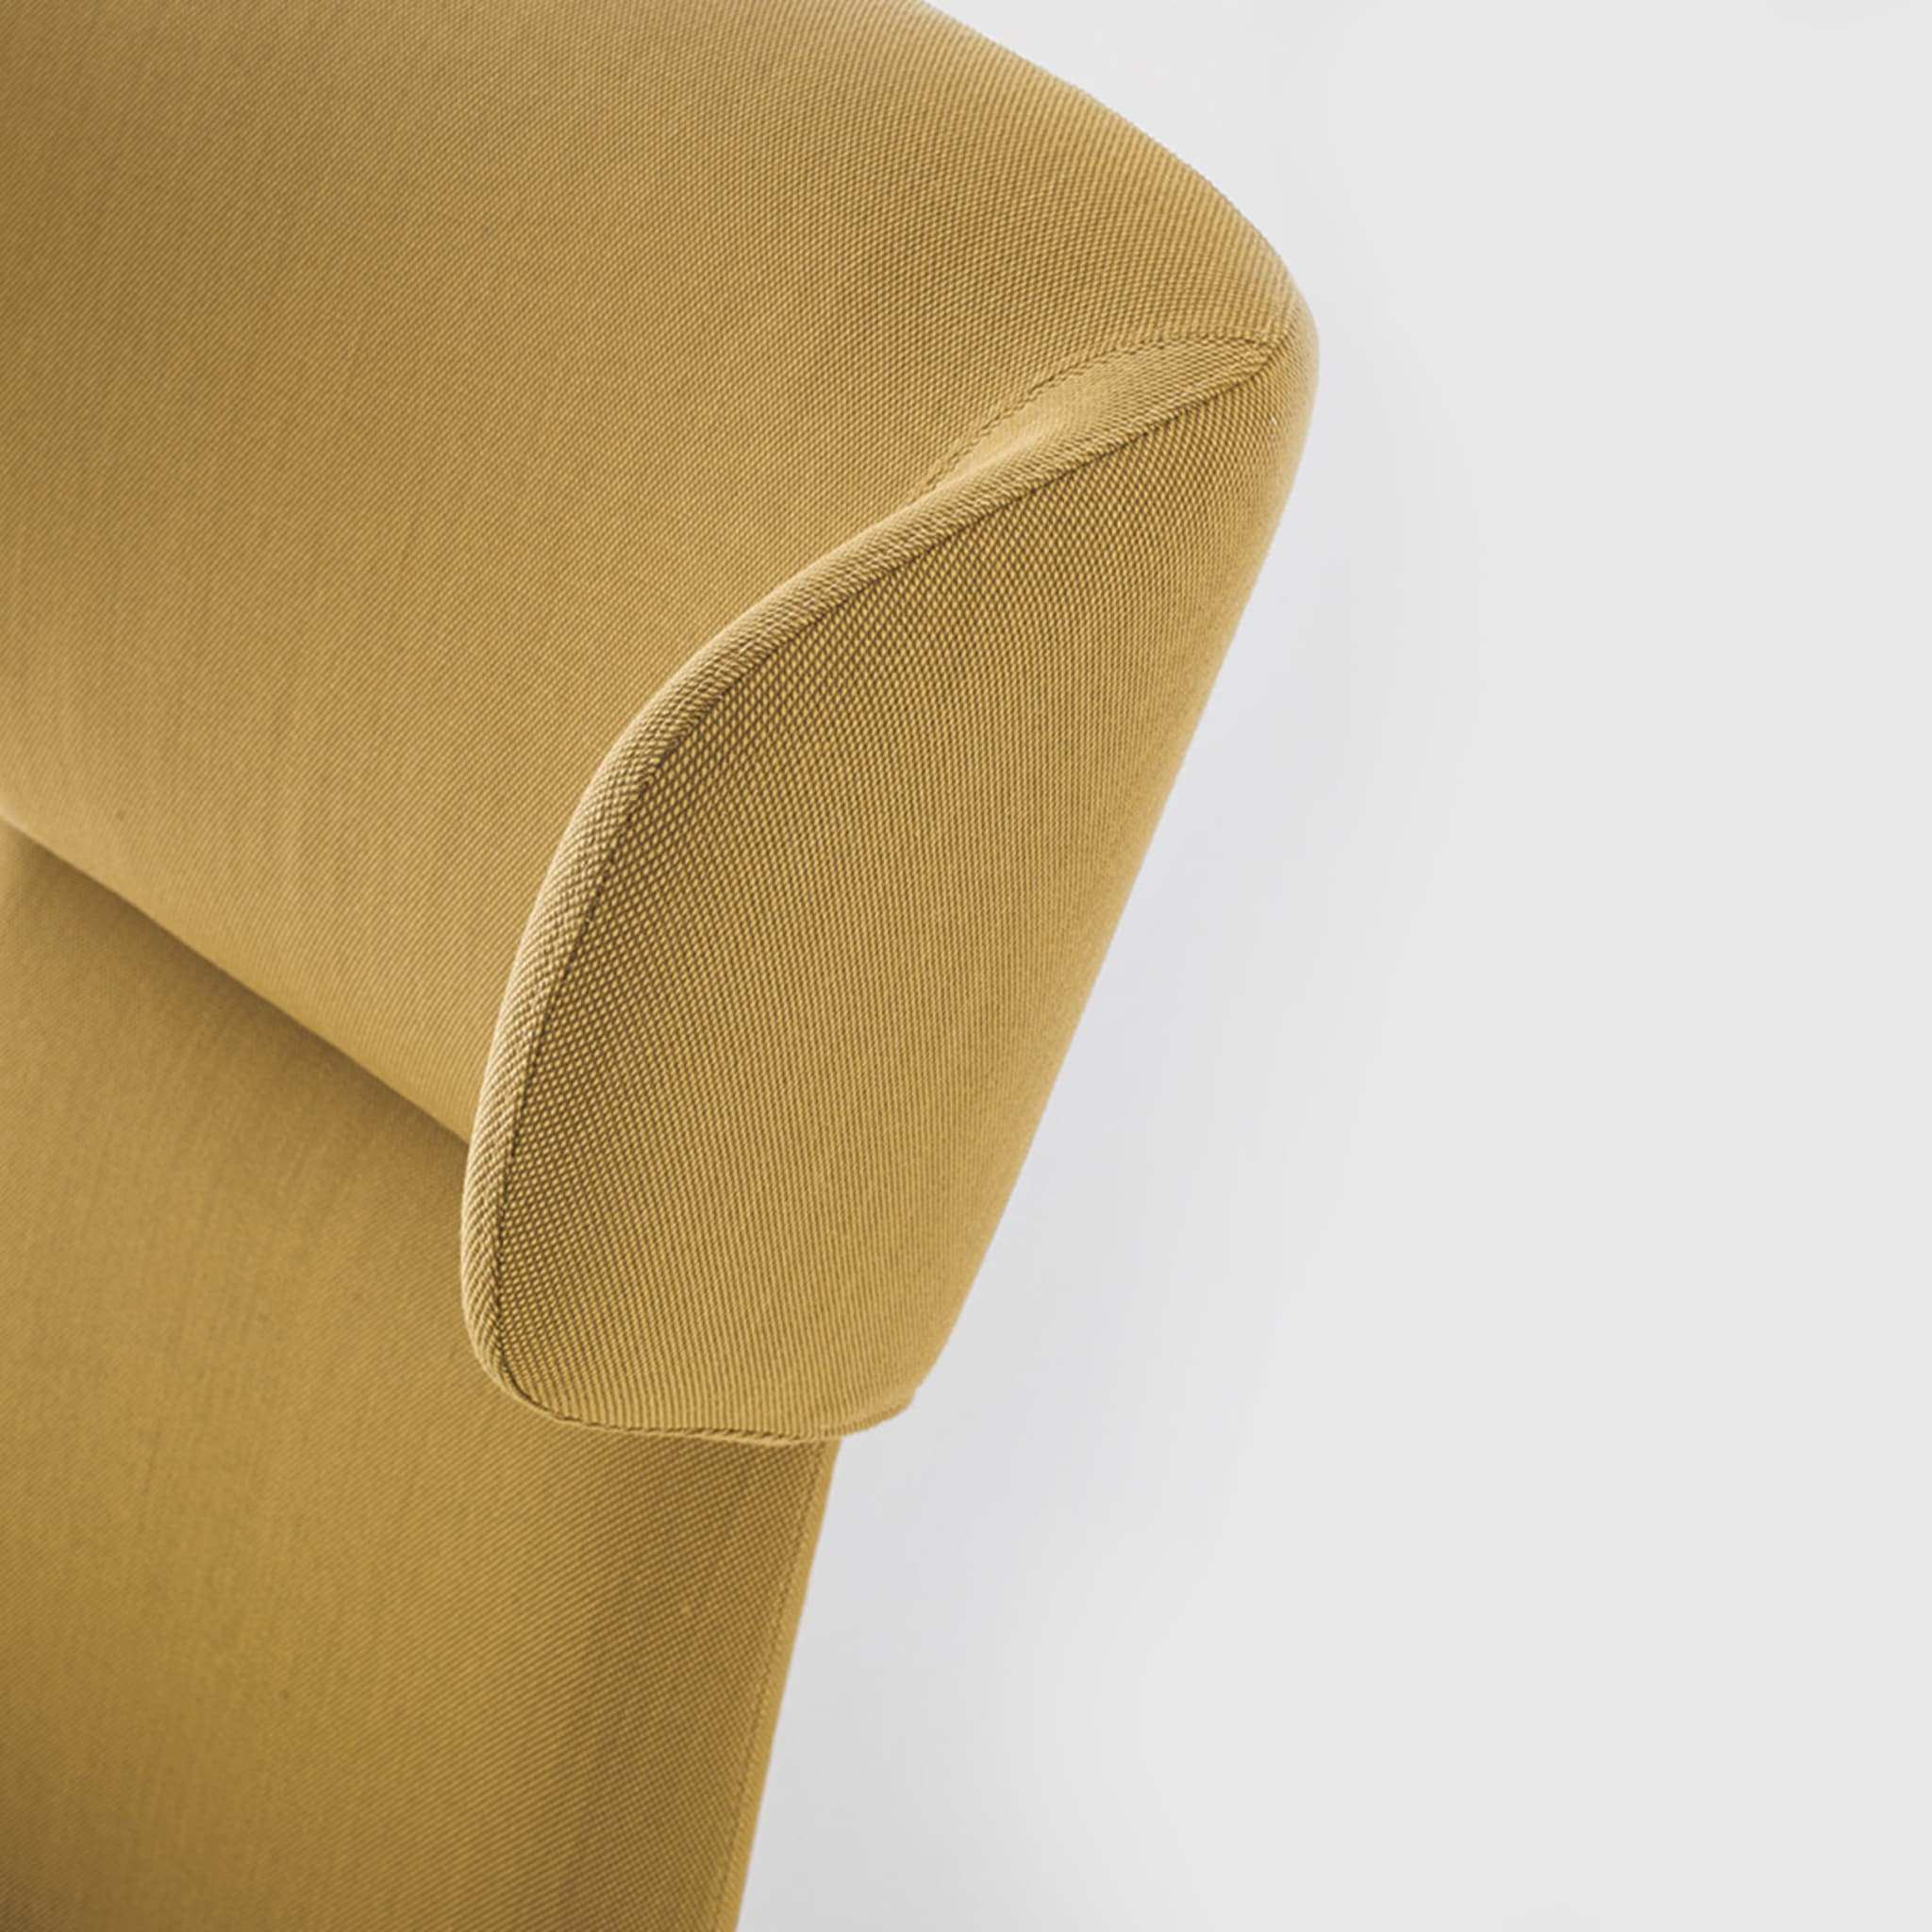 Myplace Armchair with Enveloping Headrest by Michael Geldmacher - Alternative view 2